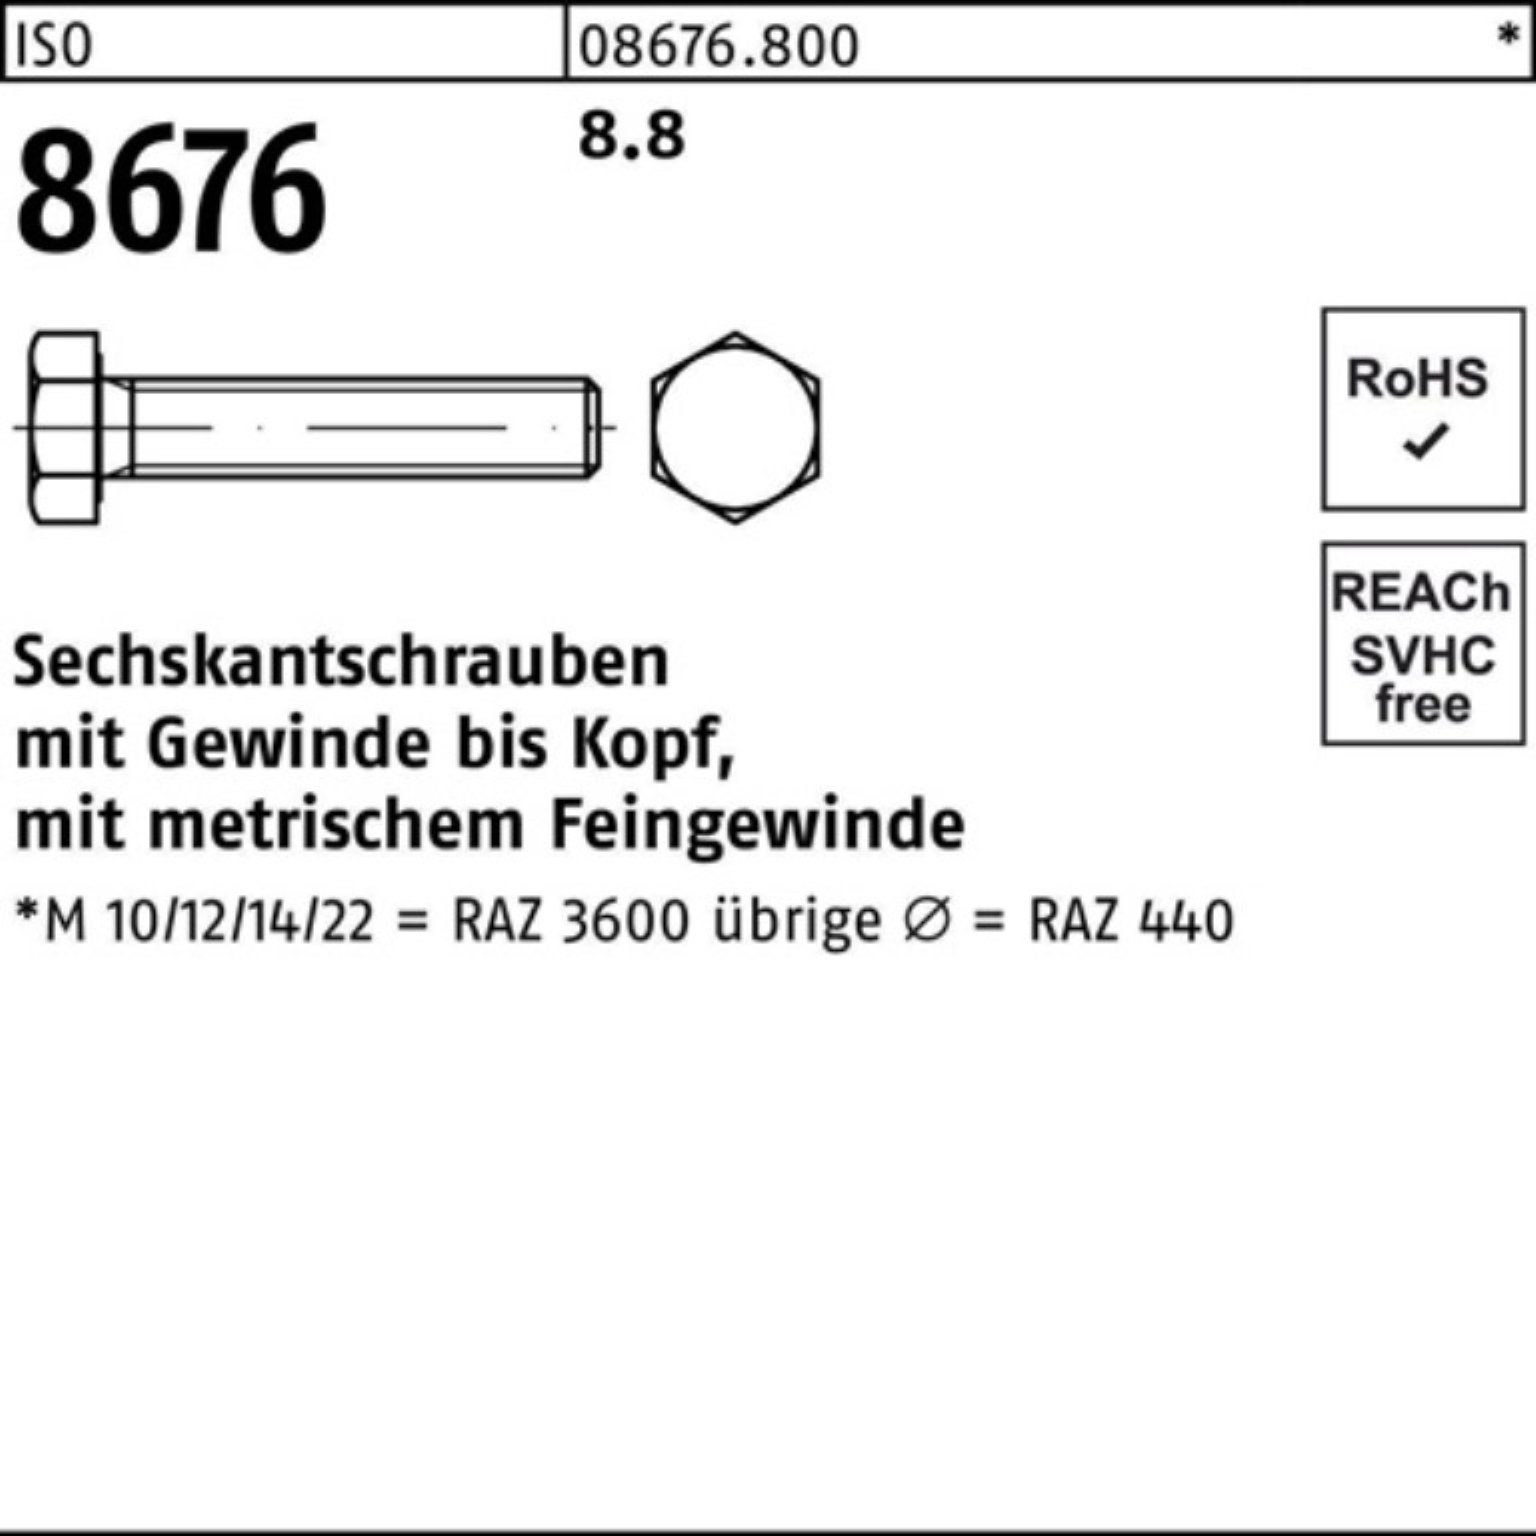 ISO Pack Sechskantschraube 8.8 Sechskantschraube Stück 100er 25 Reyher 100 8676 VG M16x1,5x IS